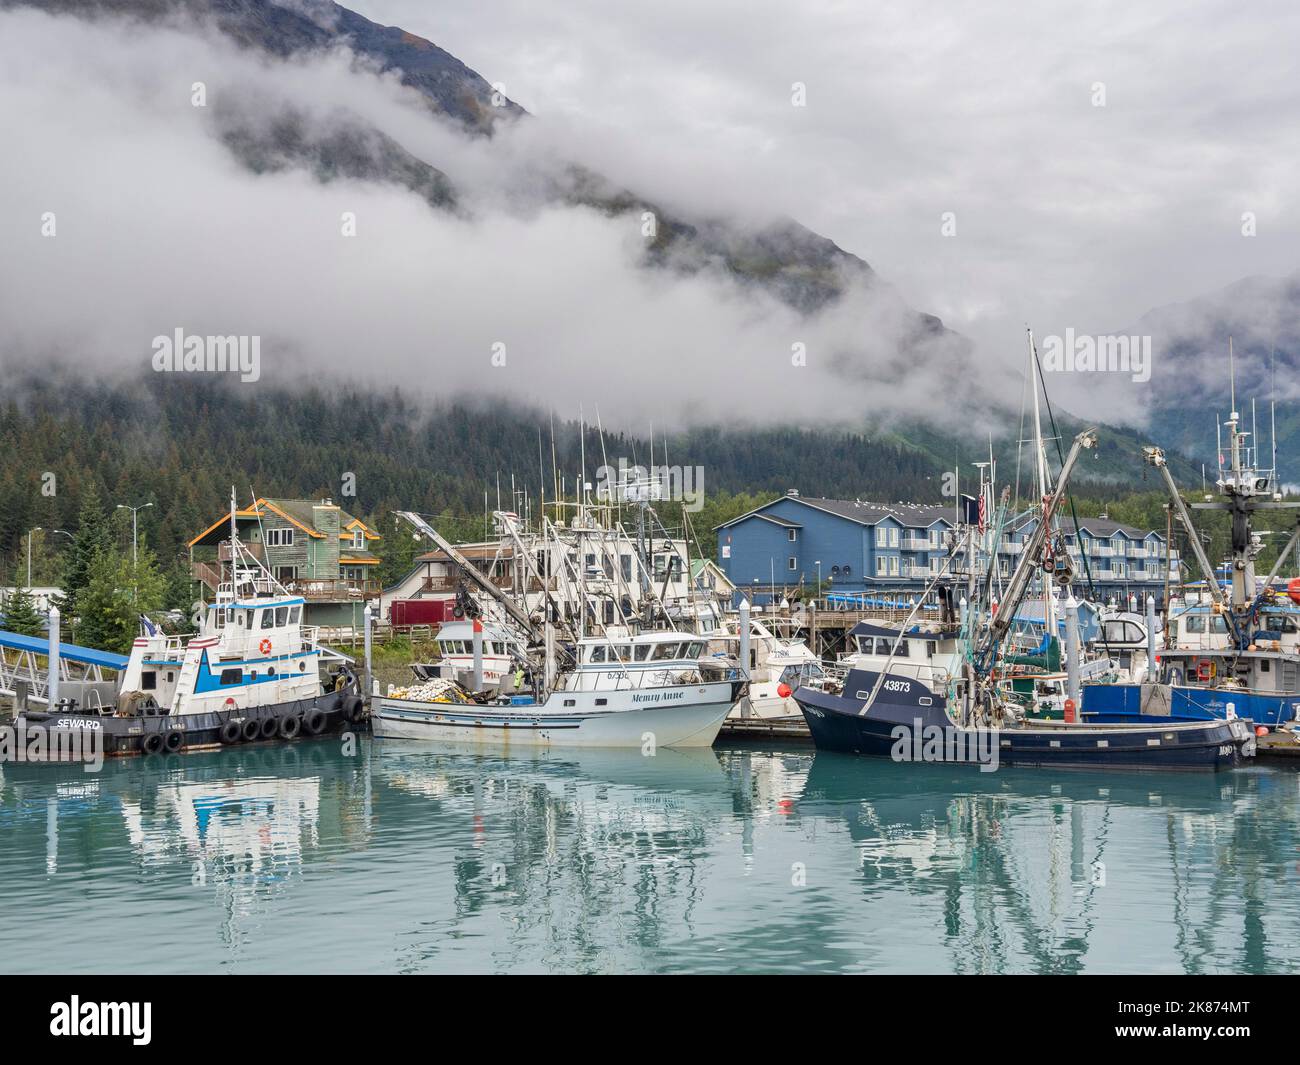 Le port de Seward à Resurrection Bay, porte d'entrée des Fjords de Kenai dans le parc national de Kenai Fjords, Alaska, États-Unis d'Amérique, Amérique du Nord Banque D'Images